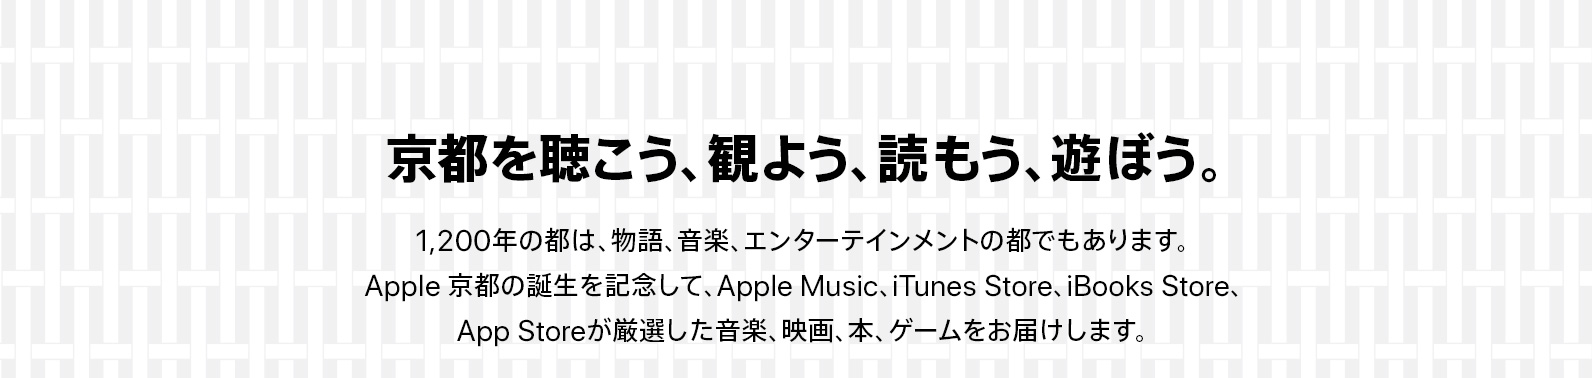 京都を聴こう、観よう、読もう、遊ぼう。1,200年の都は、物語、音楽、エンターテインメントの都でもあります。Apple 京都の誕生を記念して、Apple Music、iTunes Store、iBooks Store、App Storeが厳選した音楽、映画、本、ゲームをお届けします。